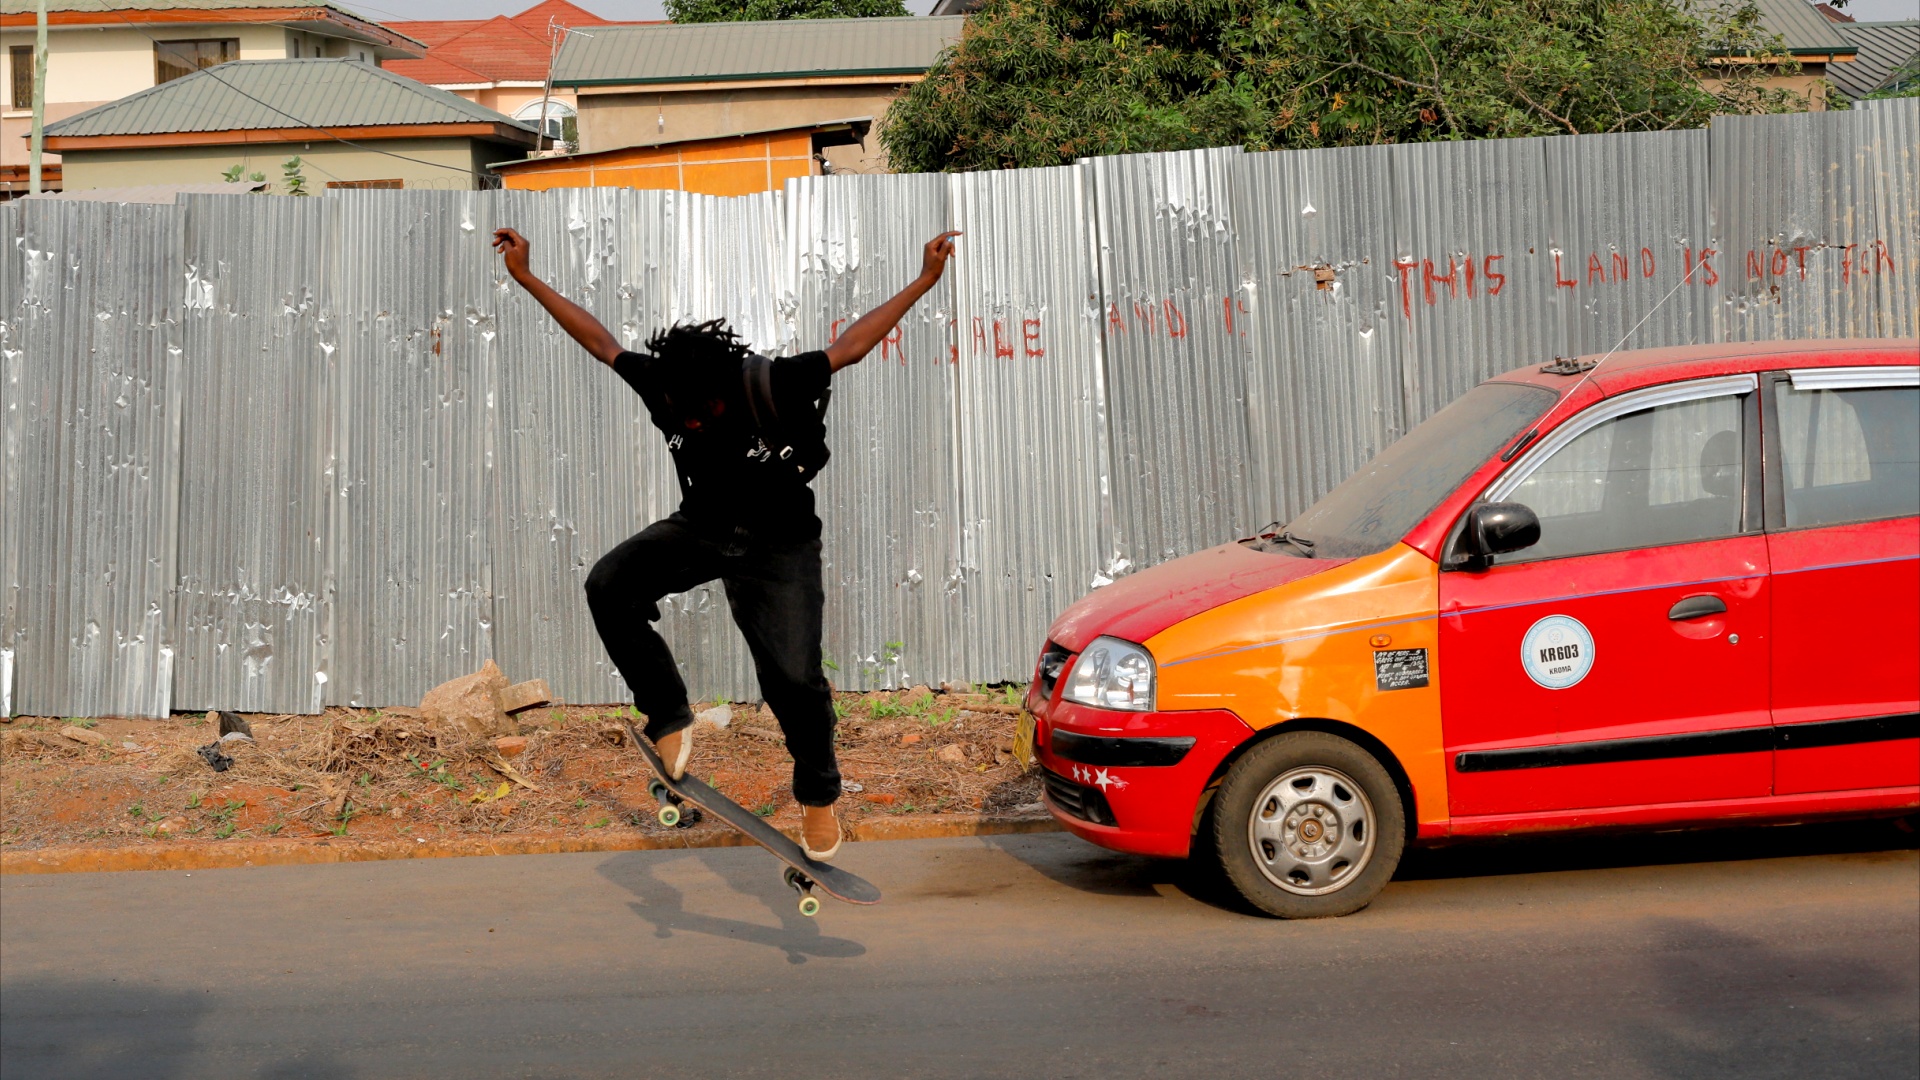 «Убрать страх»: как ганская скейтбордистка идёт к мечте